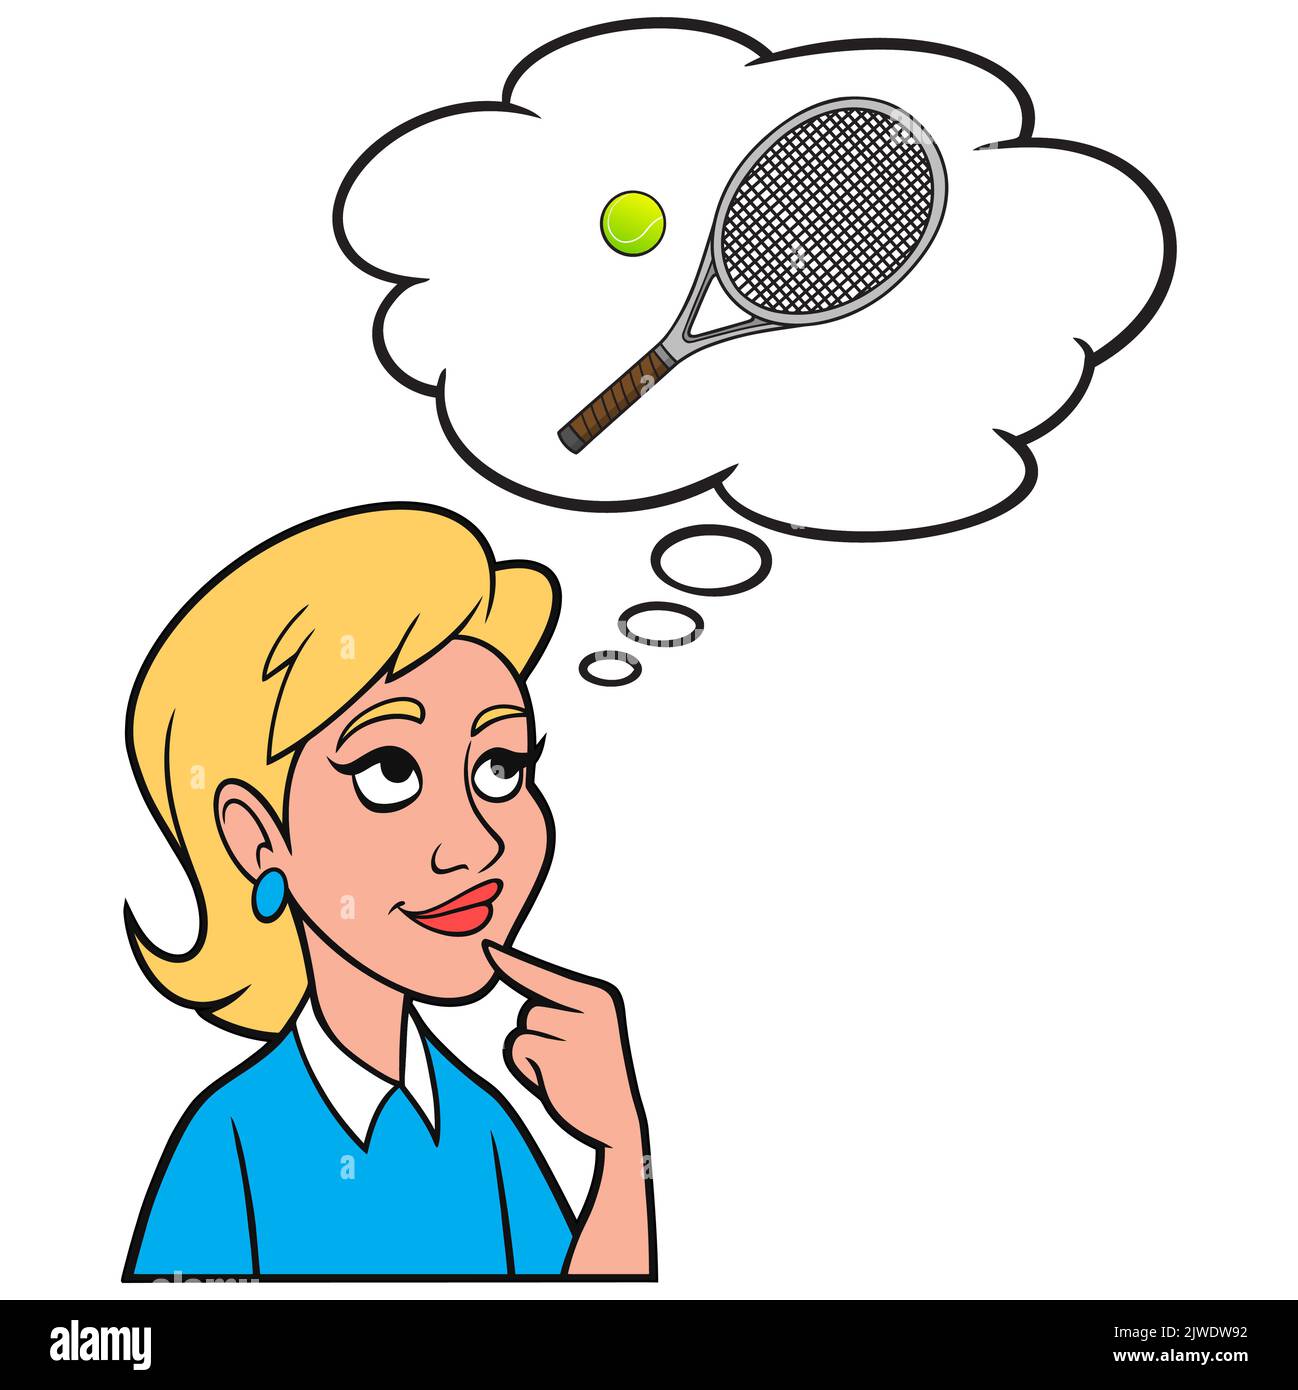 Ragazza che pensa a una palla da tennis e una racchetta - Un'illustrazione del cartone animato di una ragazza che pensa a giocare a tennis con alcuni amici. Illustrazione Vettoriale